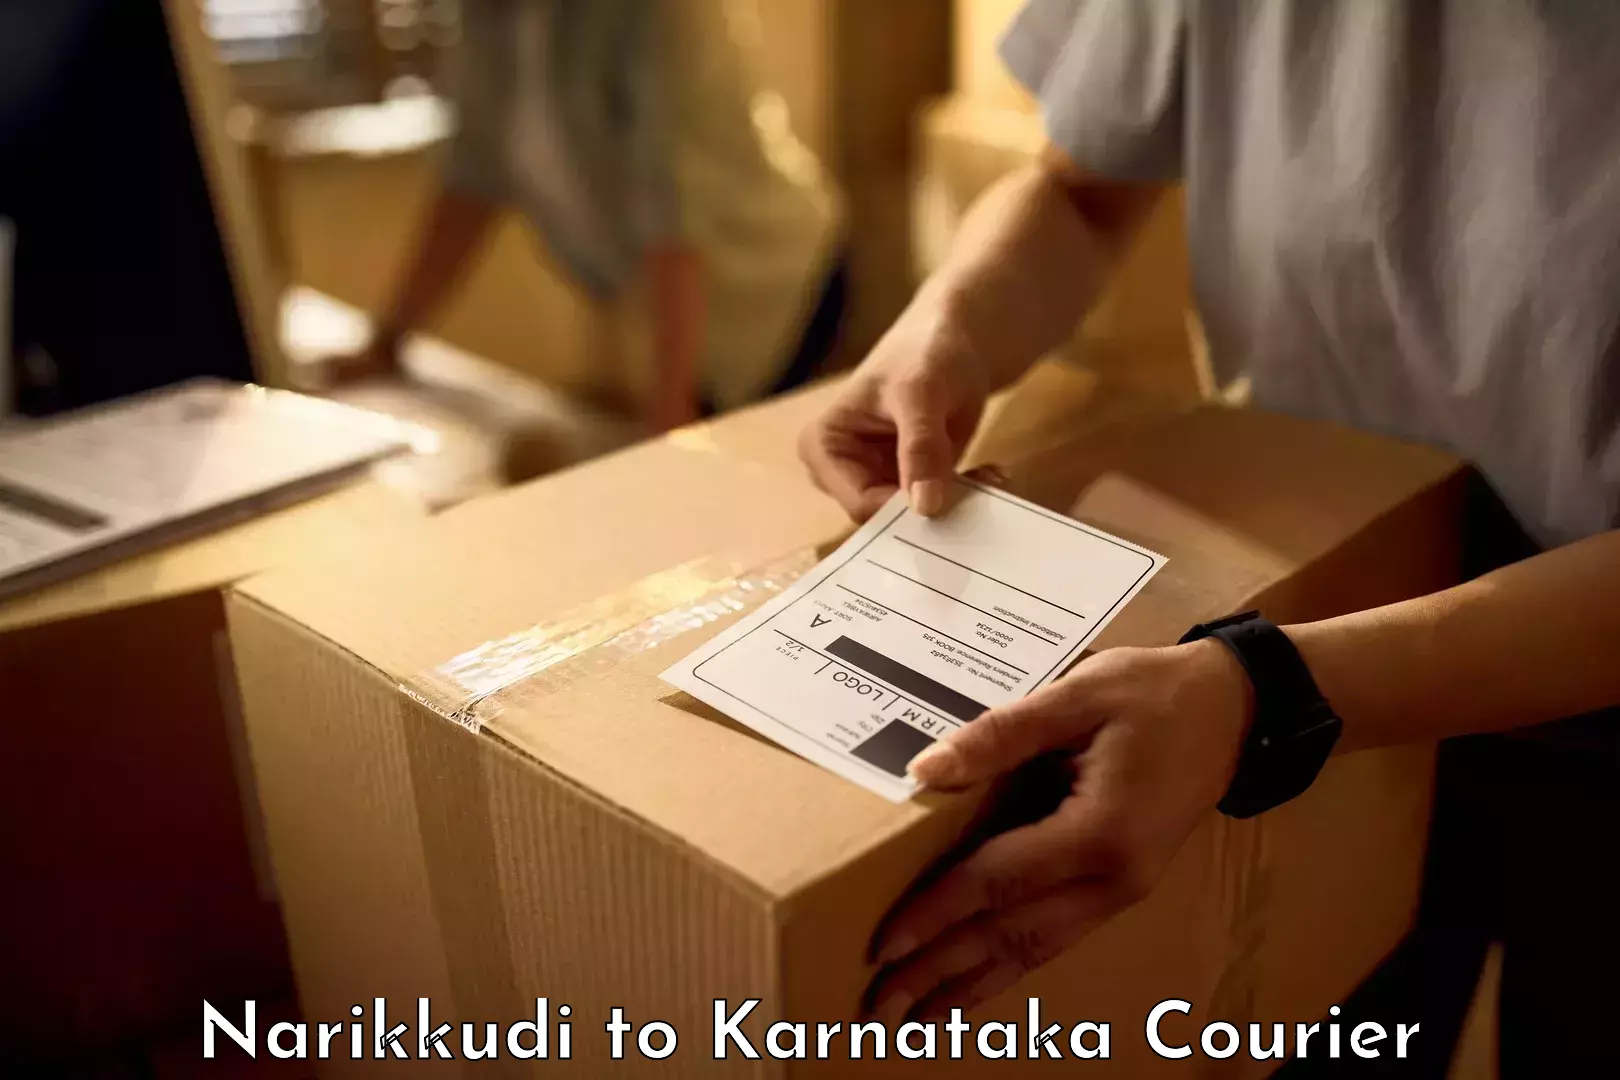 Luggage transit service Narikkudi to Karnataka